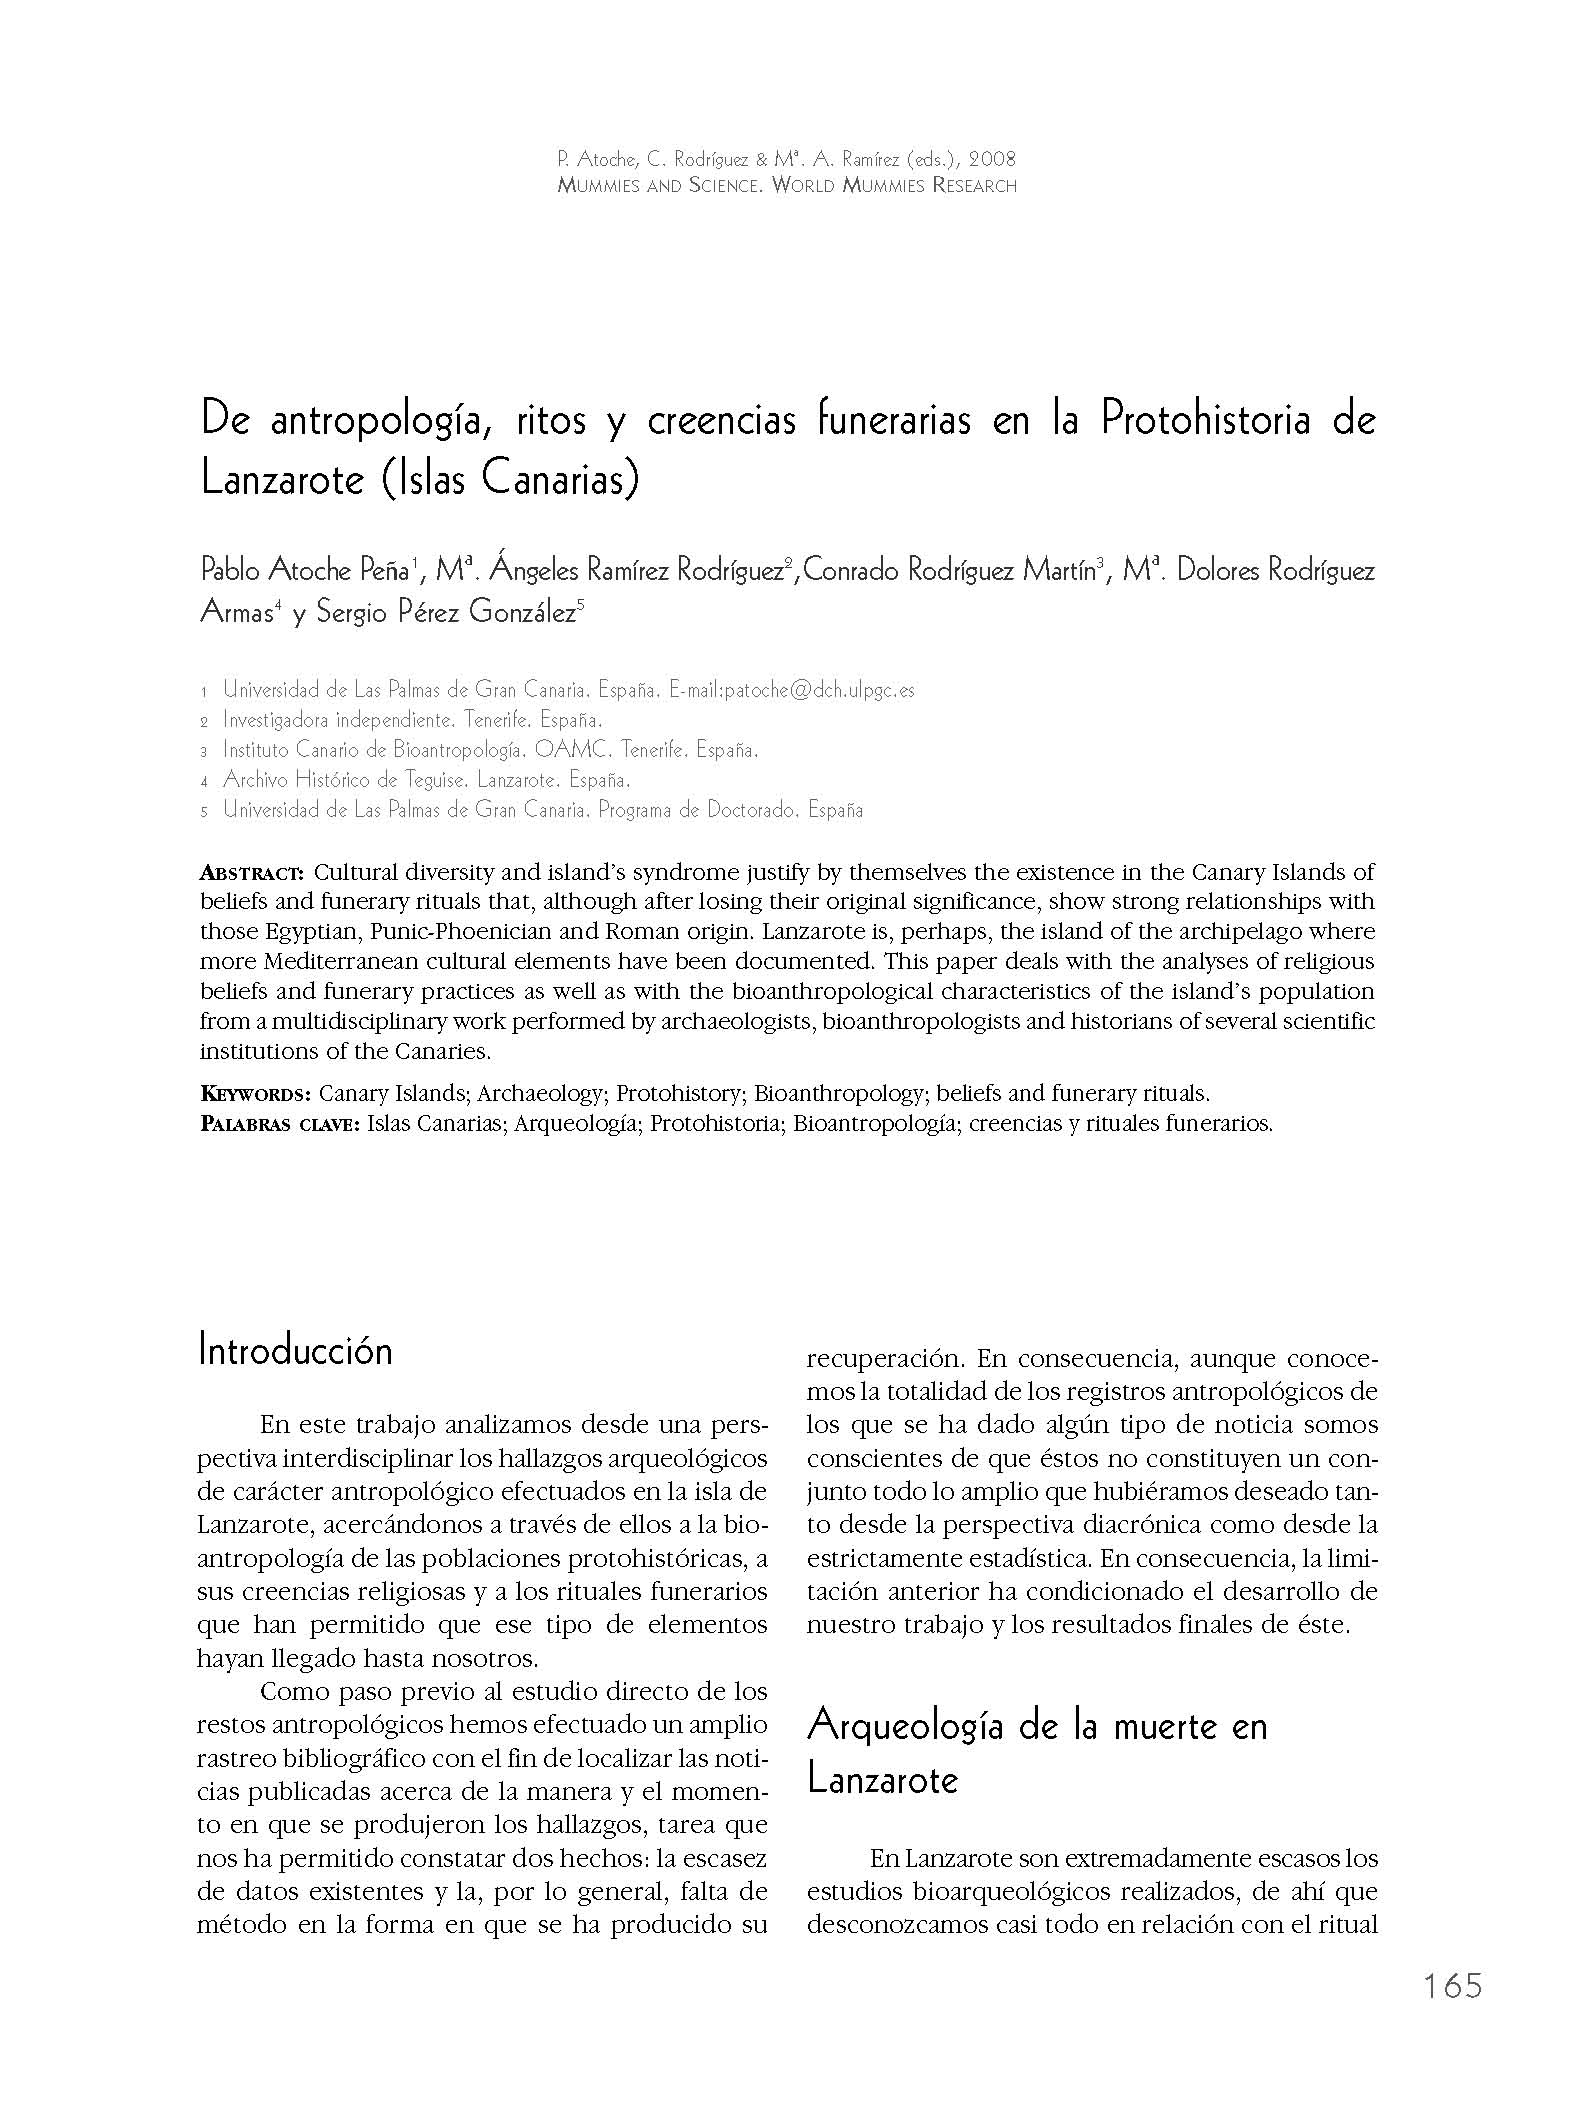 De antropología, ritos y creencias en la Protohistoria de Lanzarote (Islas Canarias)